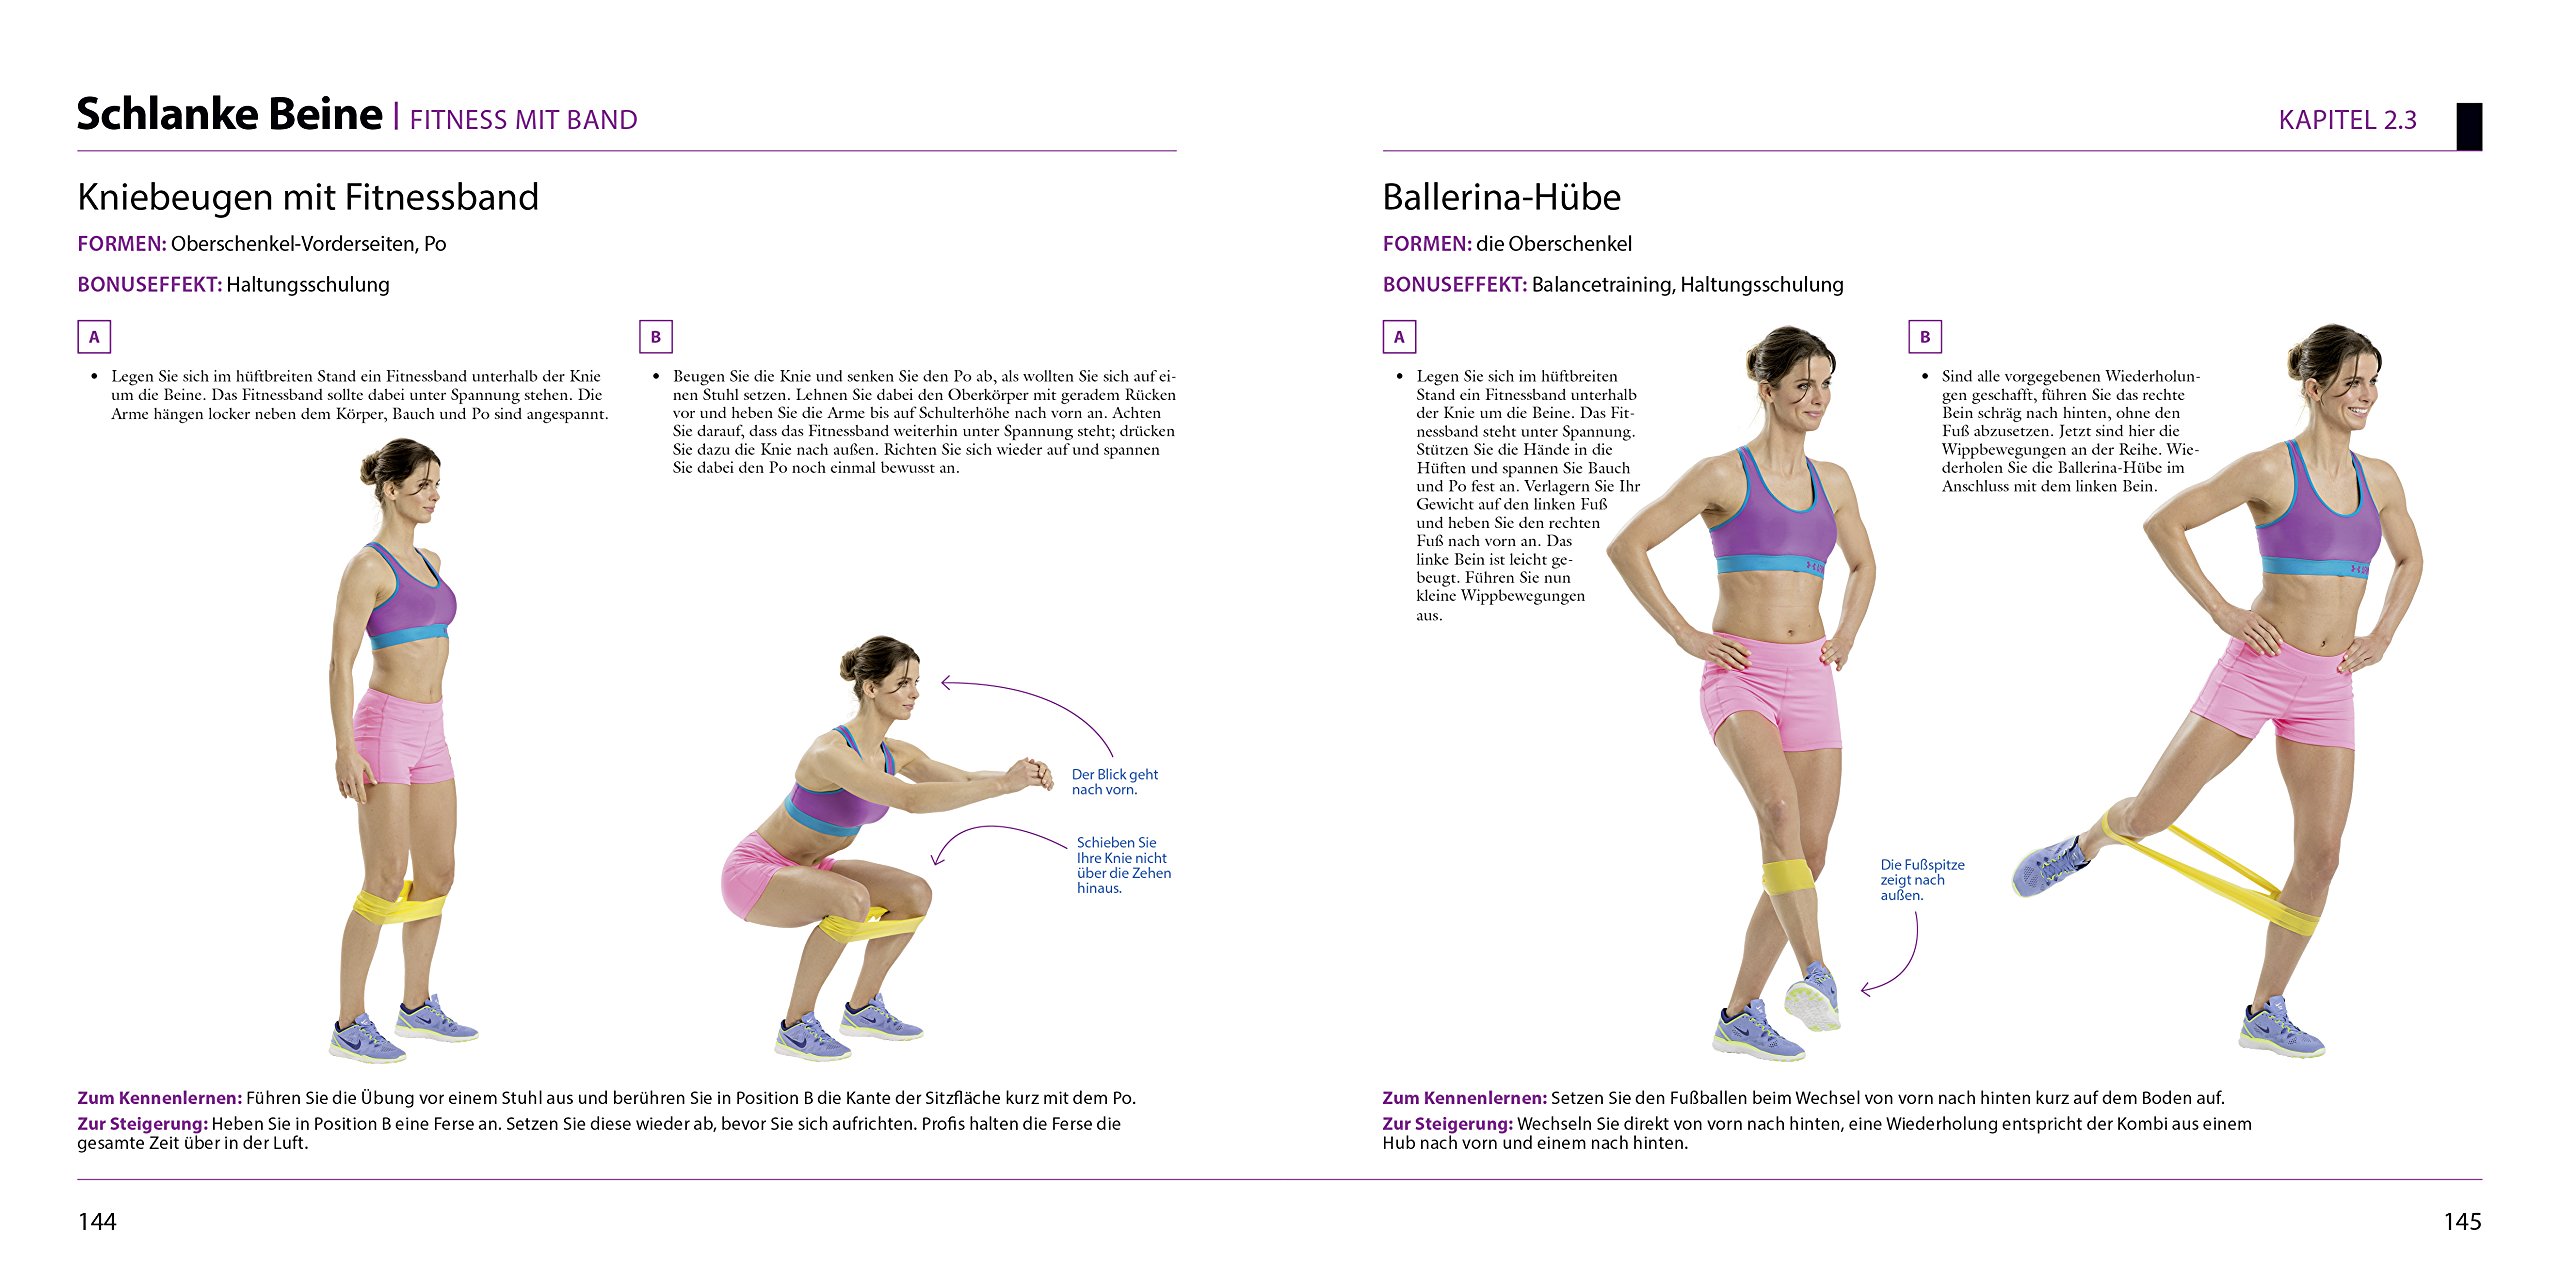 Das Women's Health Bauch-Beine-Po-Buch